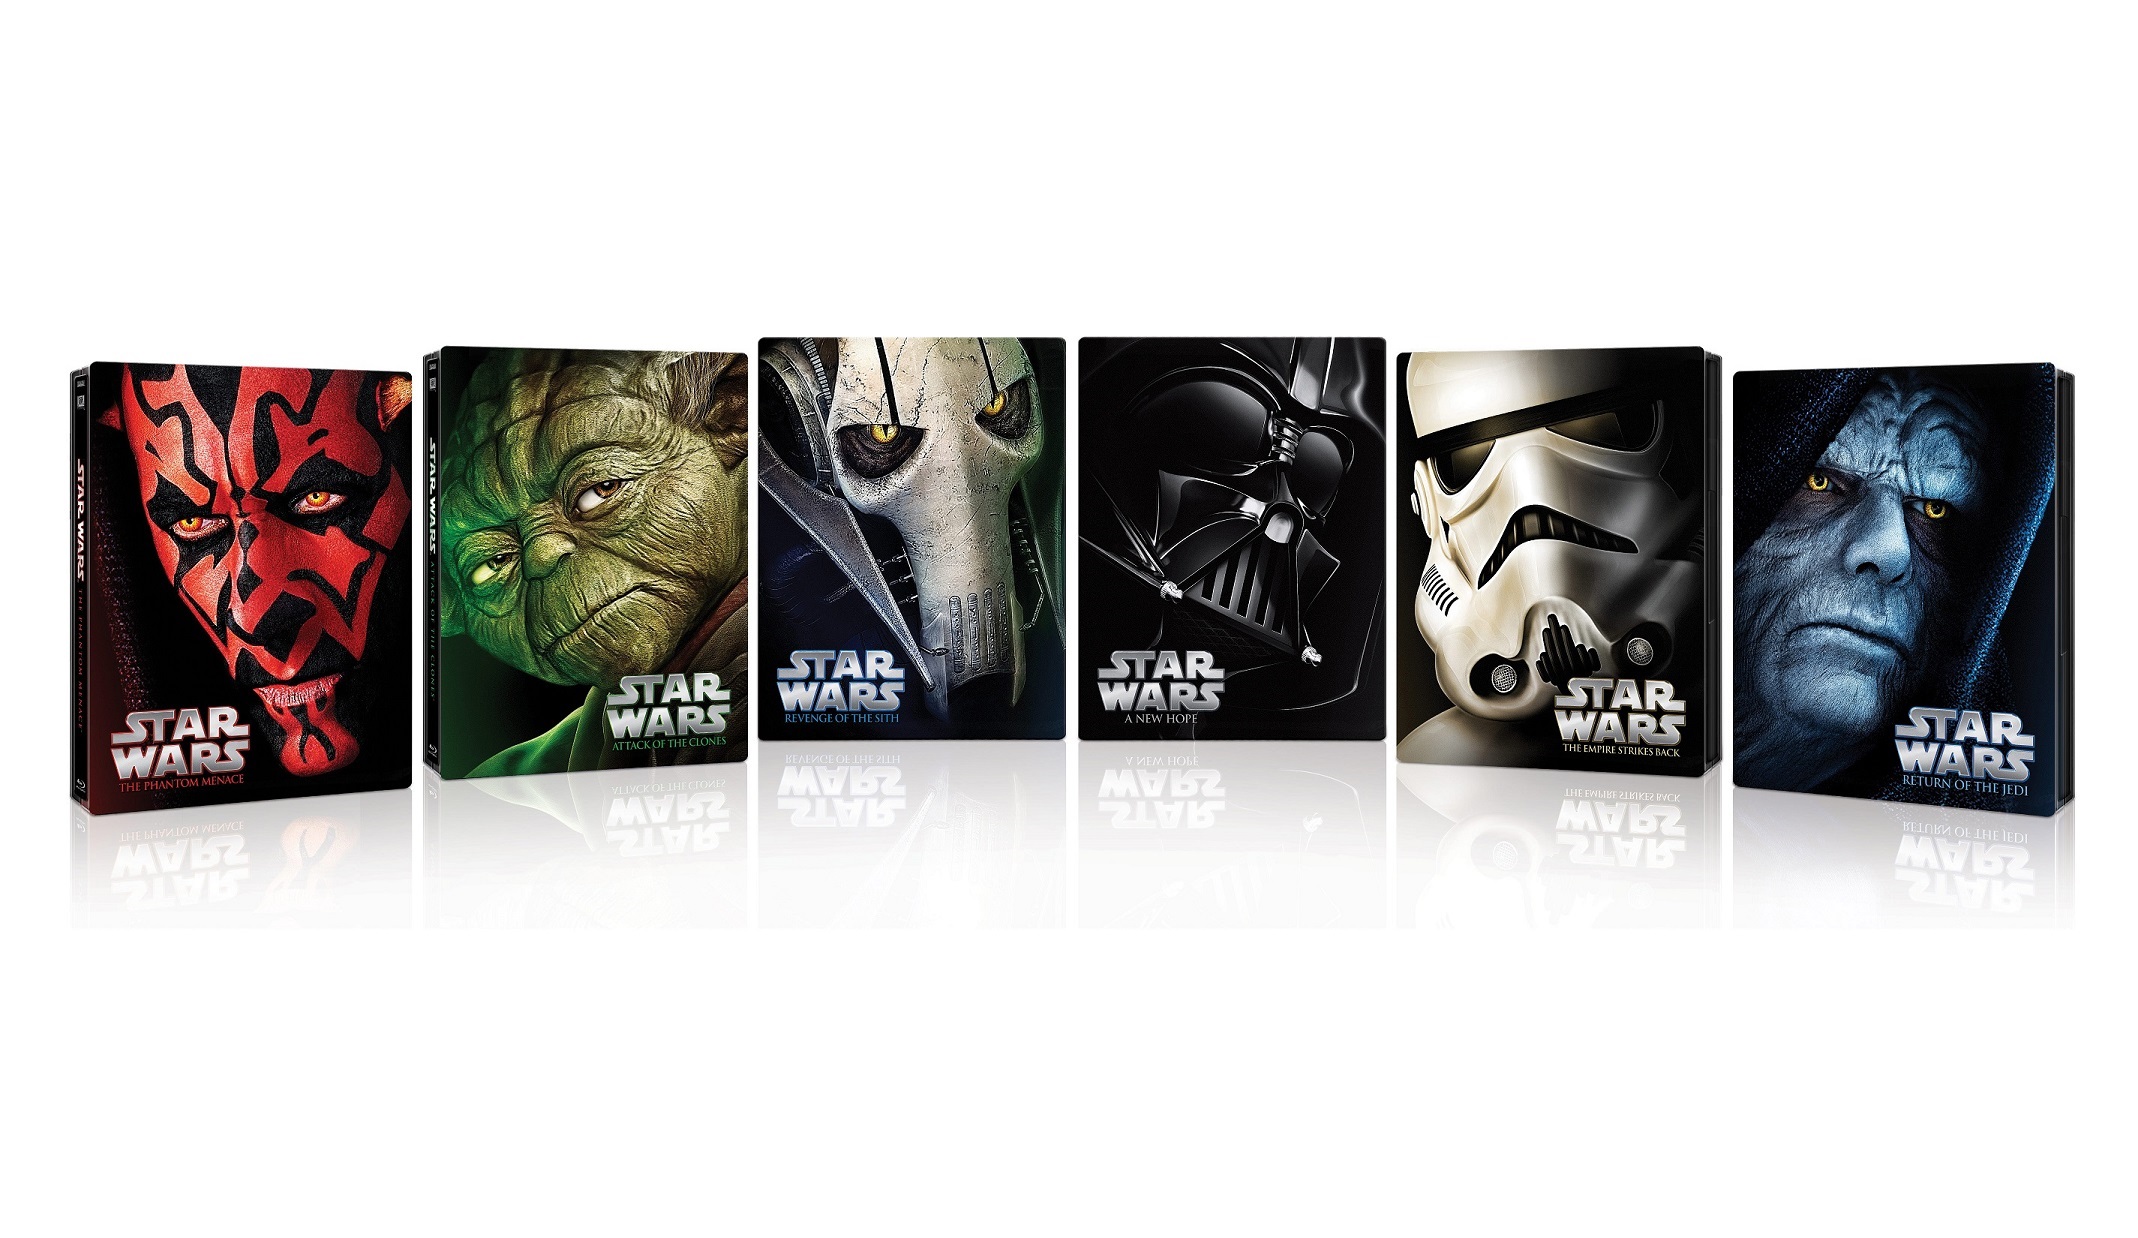 Sága Star Wars prichádza v limitovanej Blu-ray kolekcii